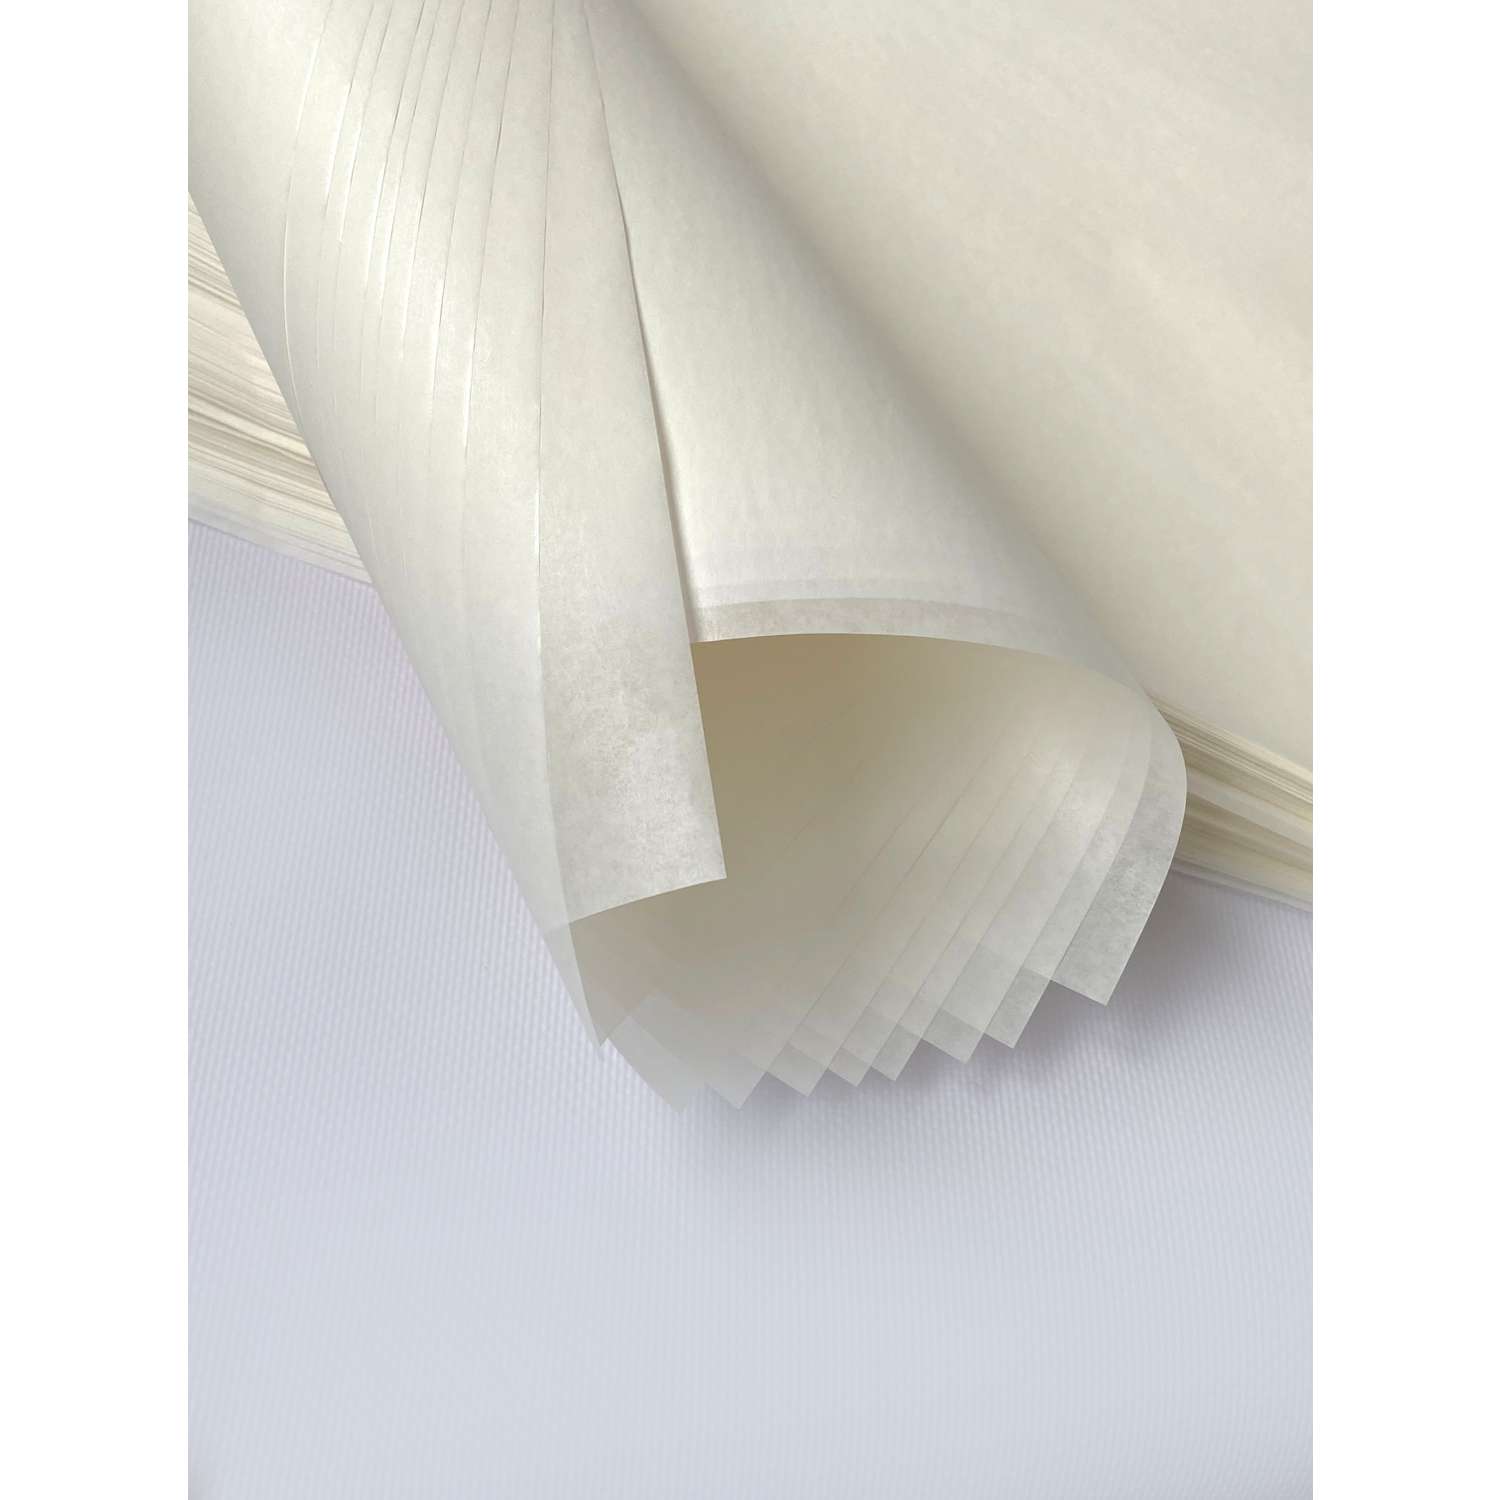 Бумага для выпечки с силиконом Gurmanoff 500 листов 40х60 см 52 мкм 39 гр/м2 белая профессиональная - фото 13